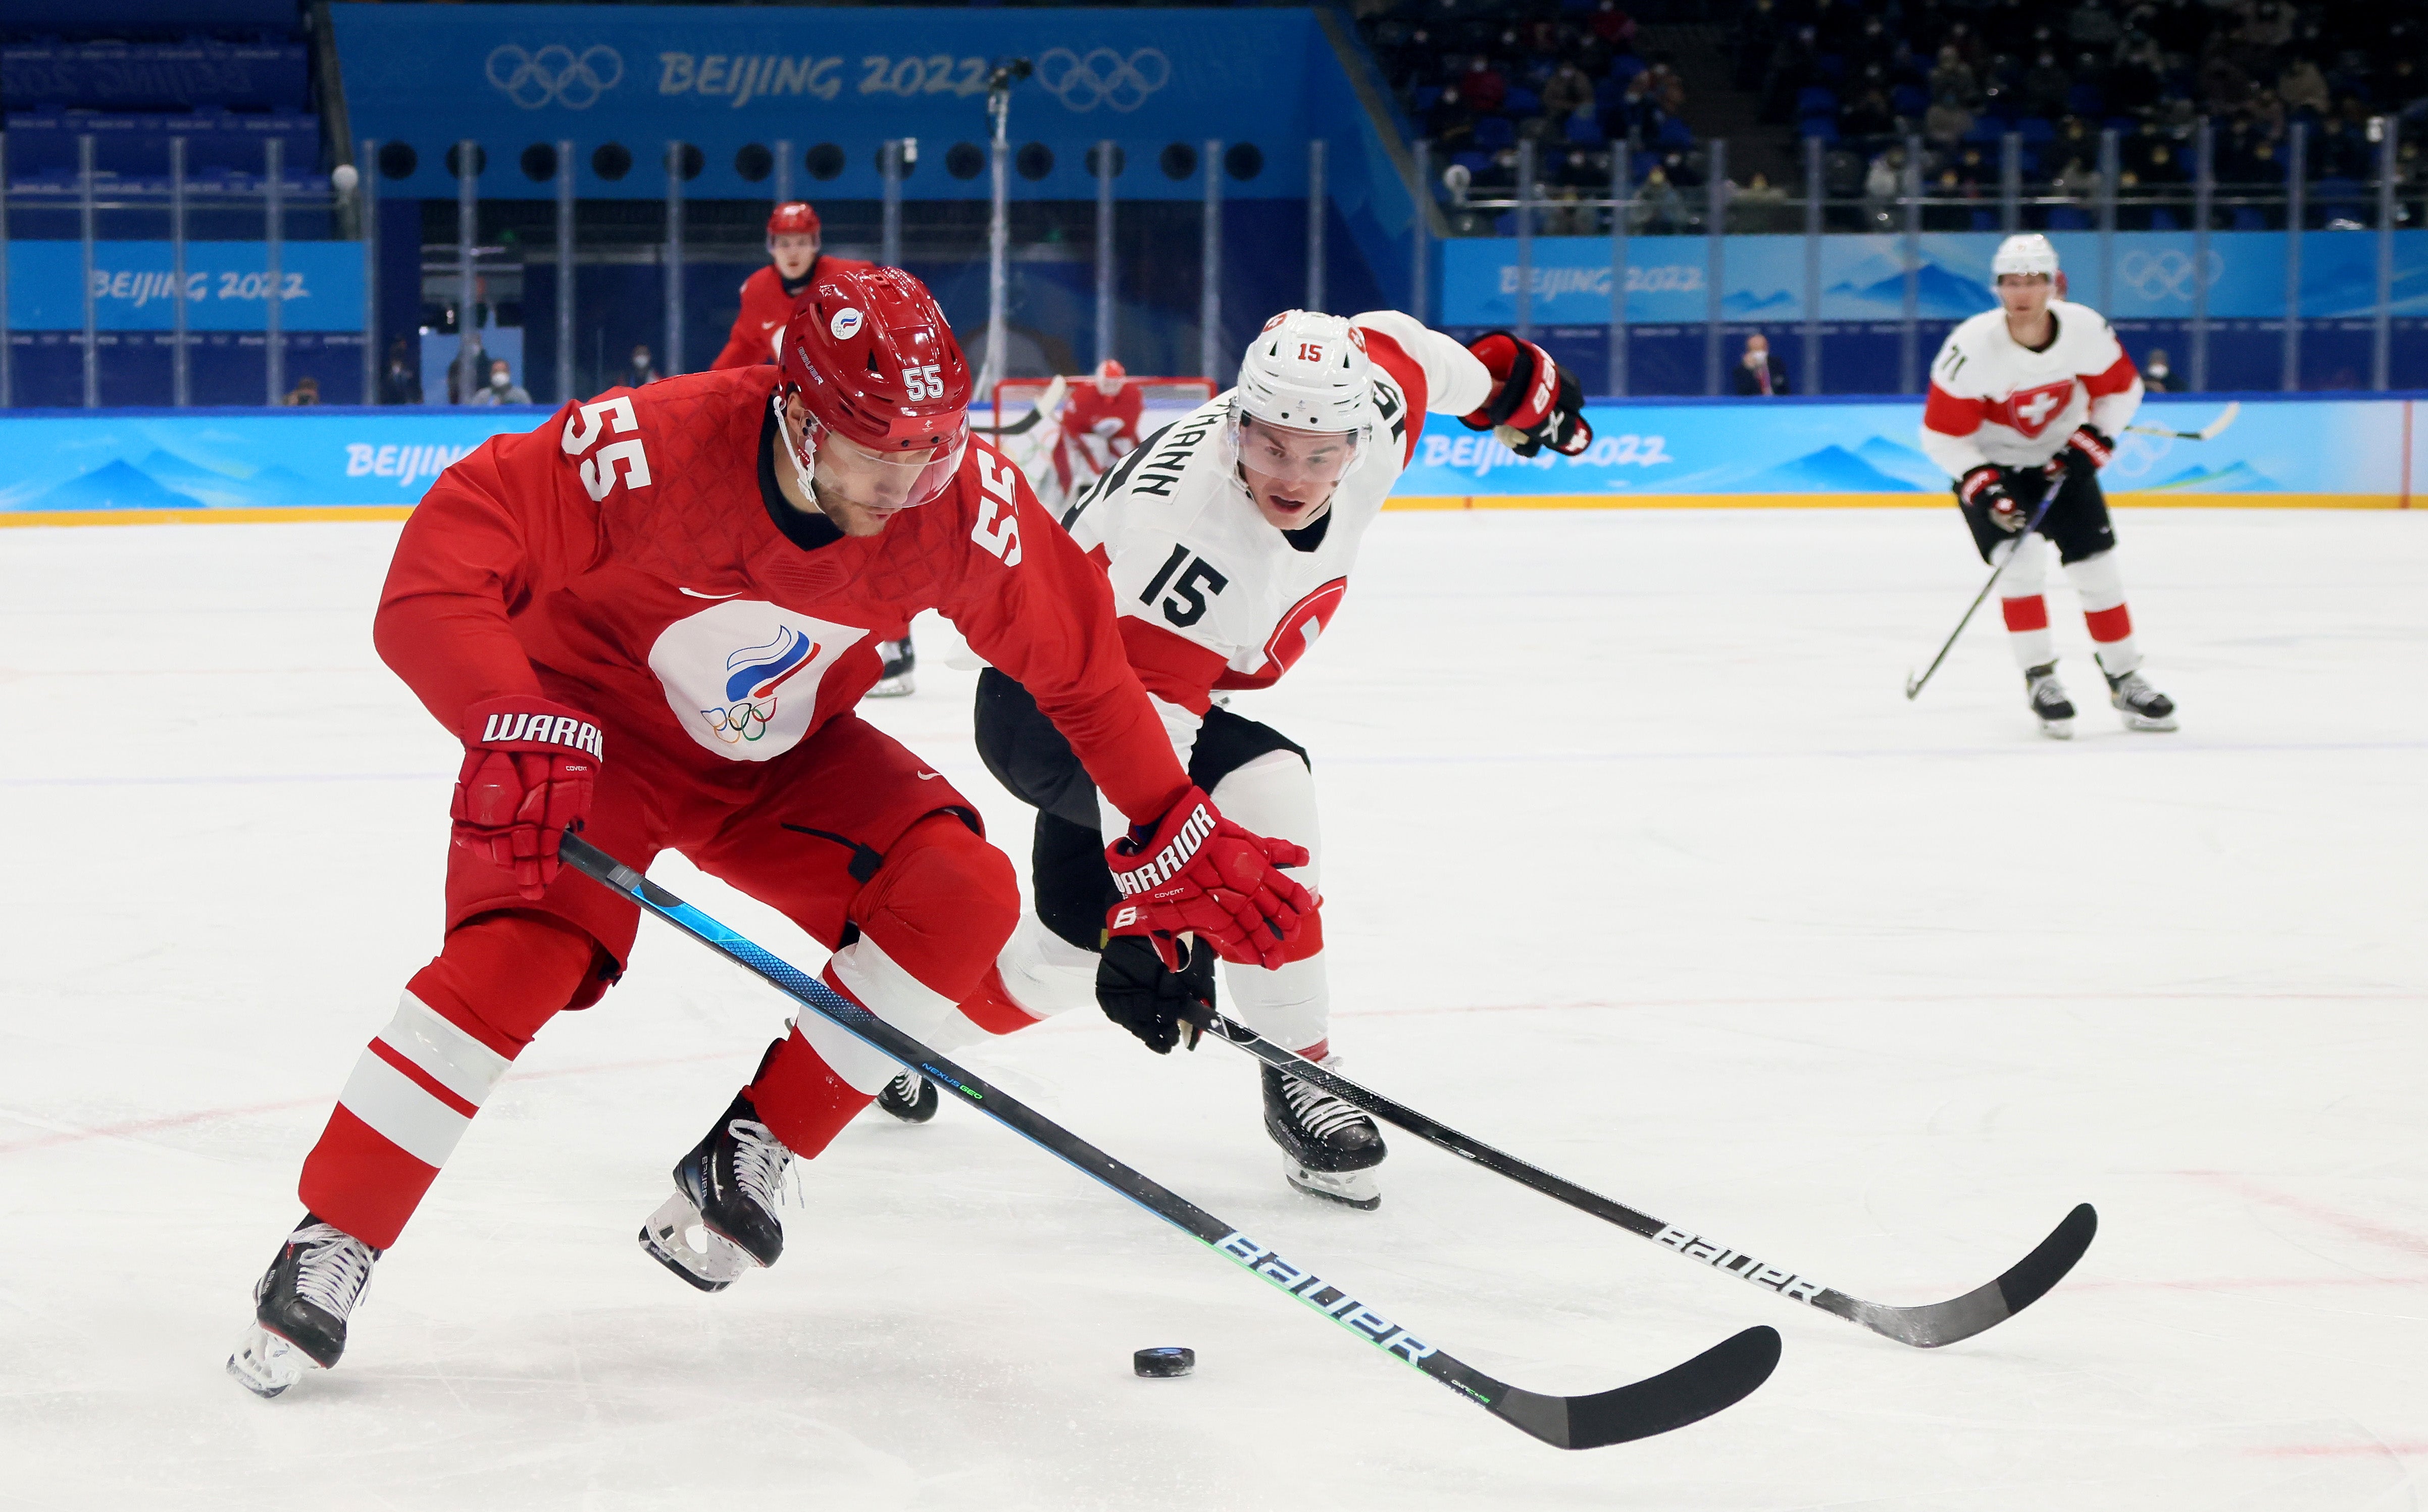 The men’s ice hockey tournament gets underway in Beijing today